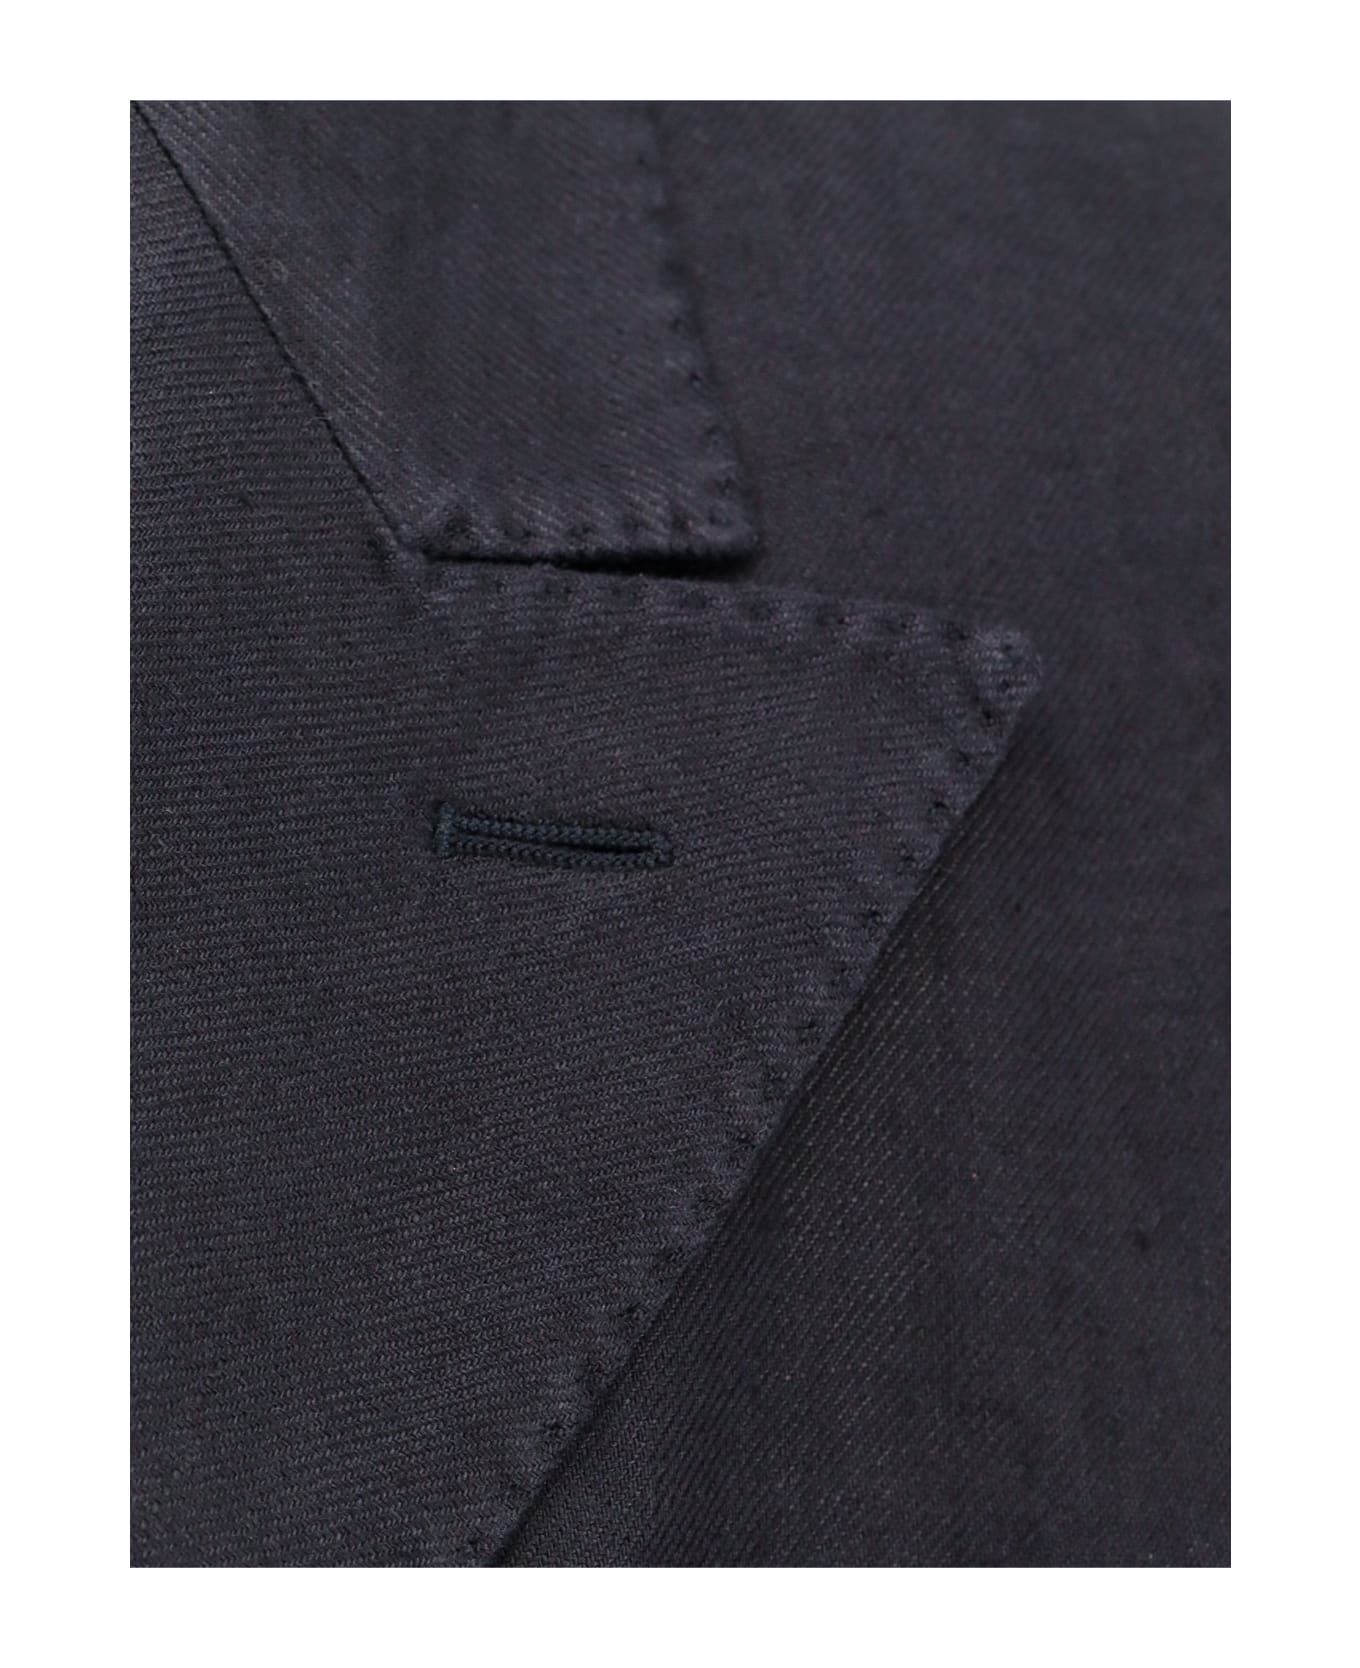 Boglioli Suit - Black スーツ